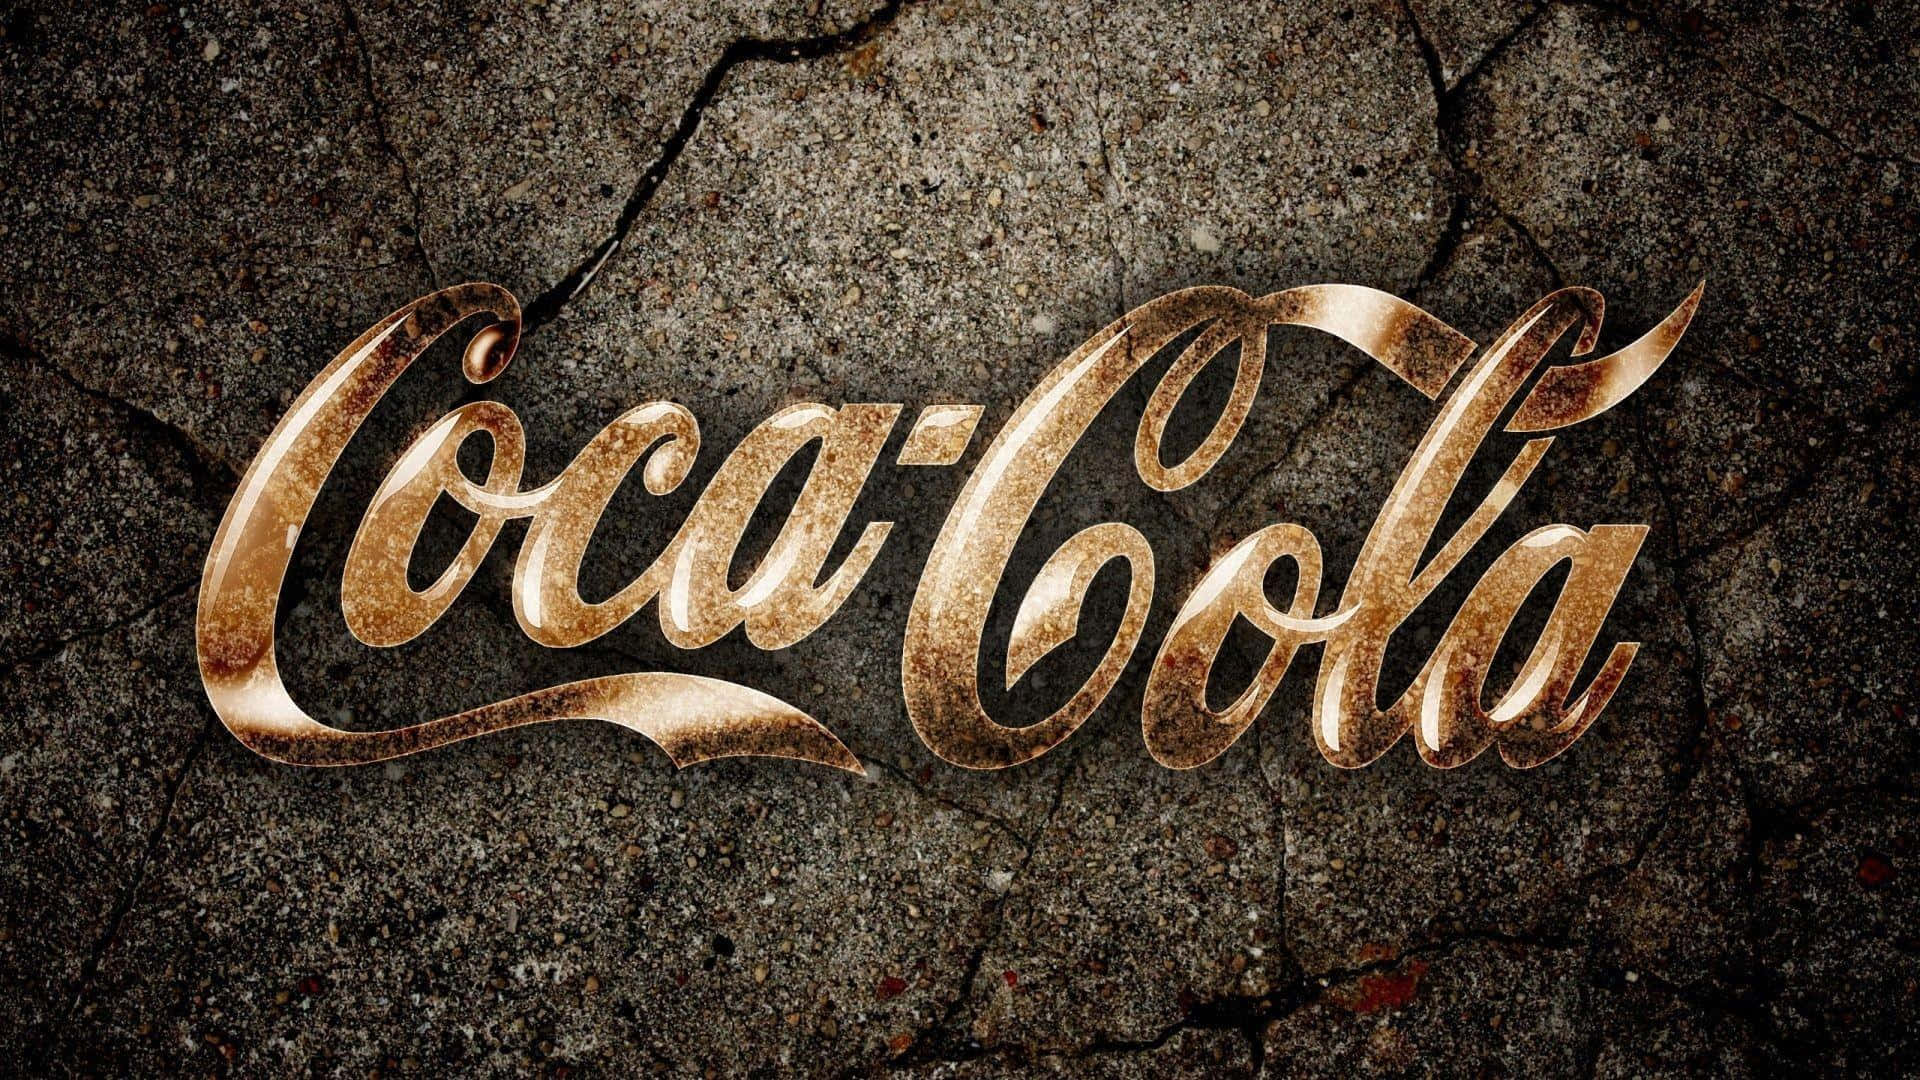 Goditiil Gusto Iconico Di Coca-cola!